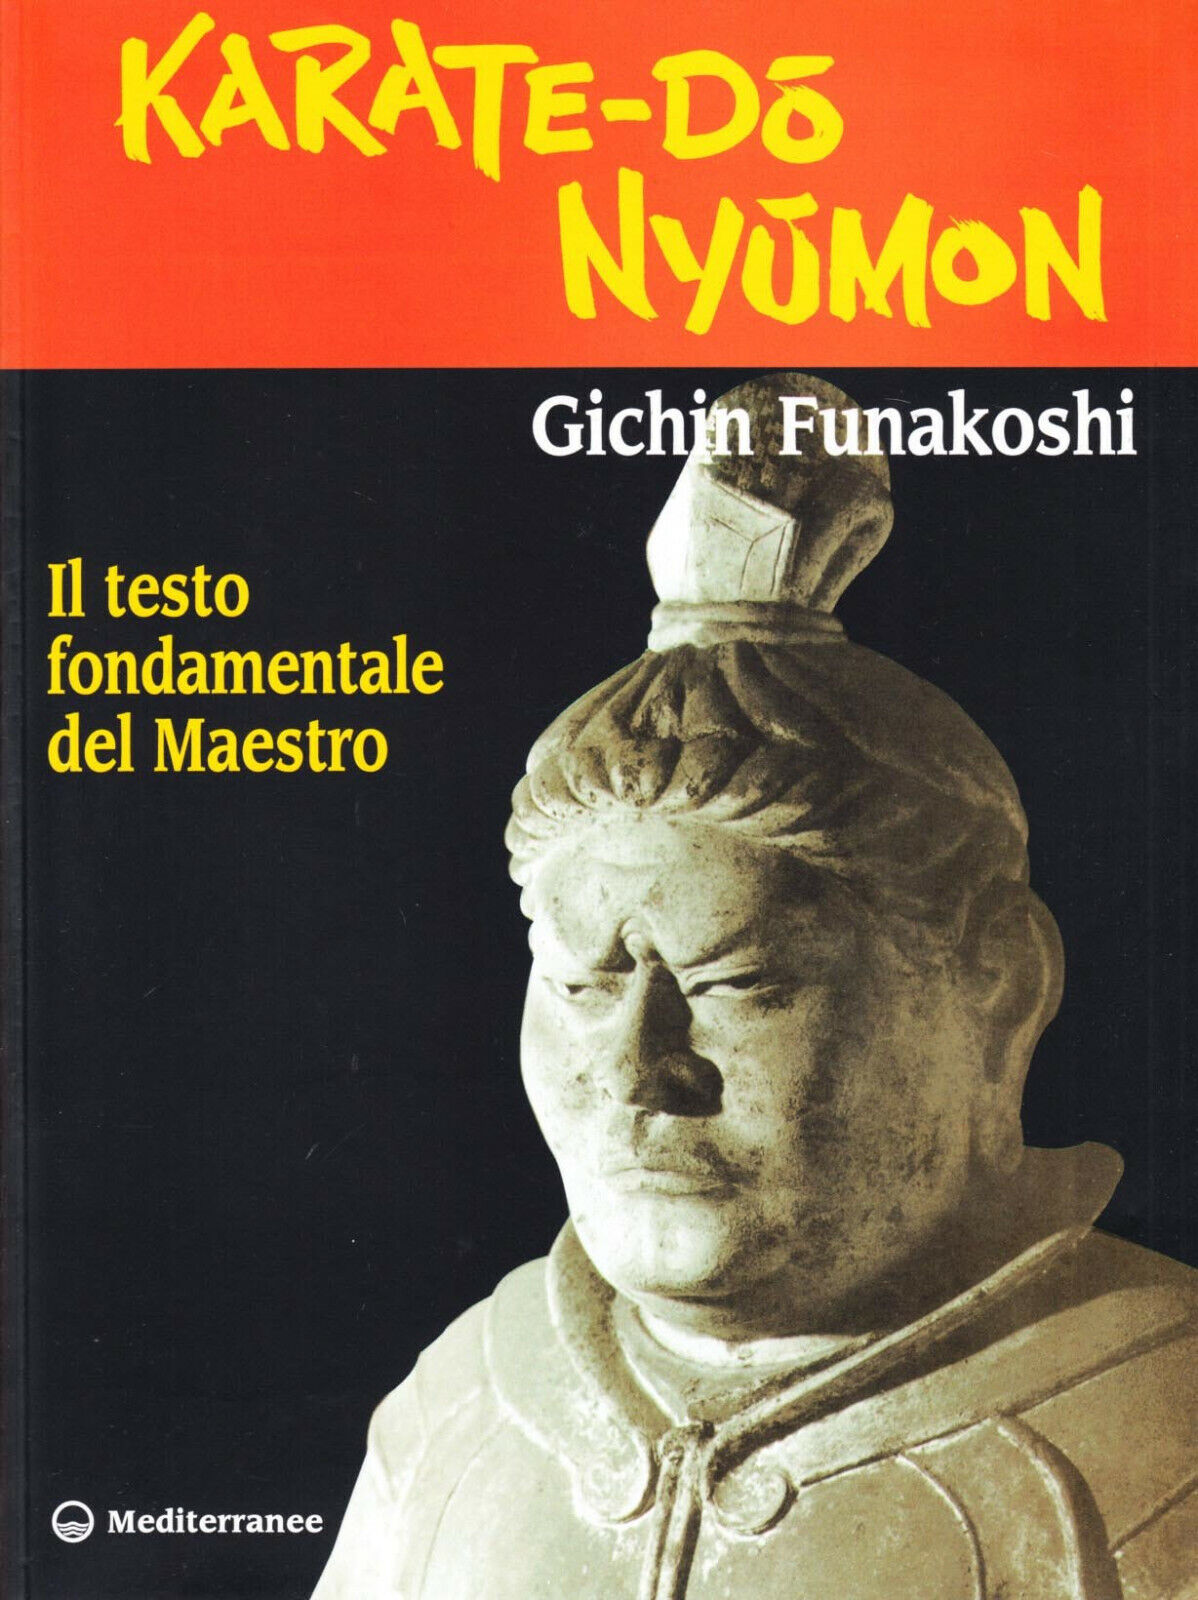 Karate do nyumon - Gichin Funakoshi - edizioni Mediterranee, 1998 libro usato